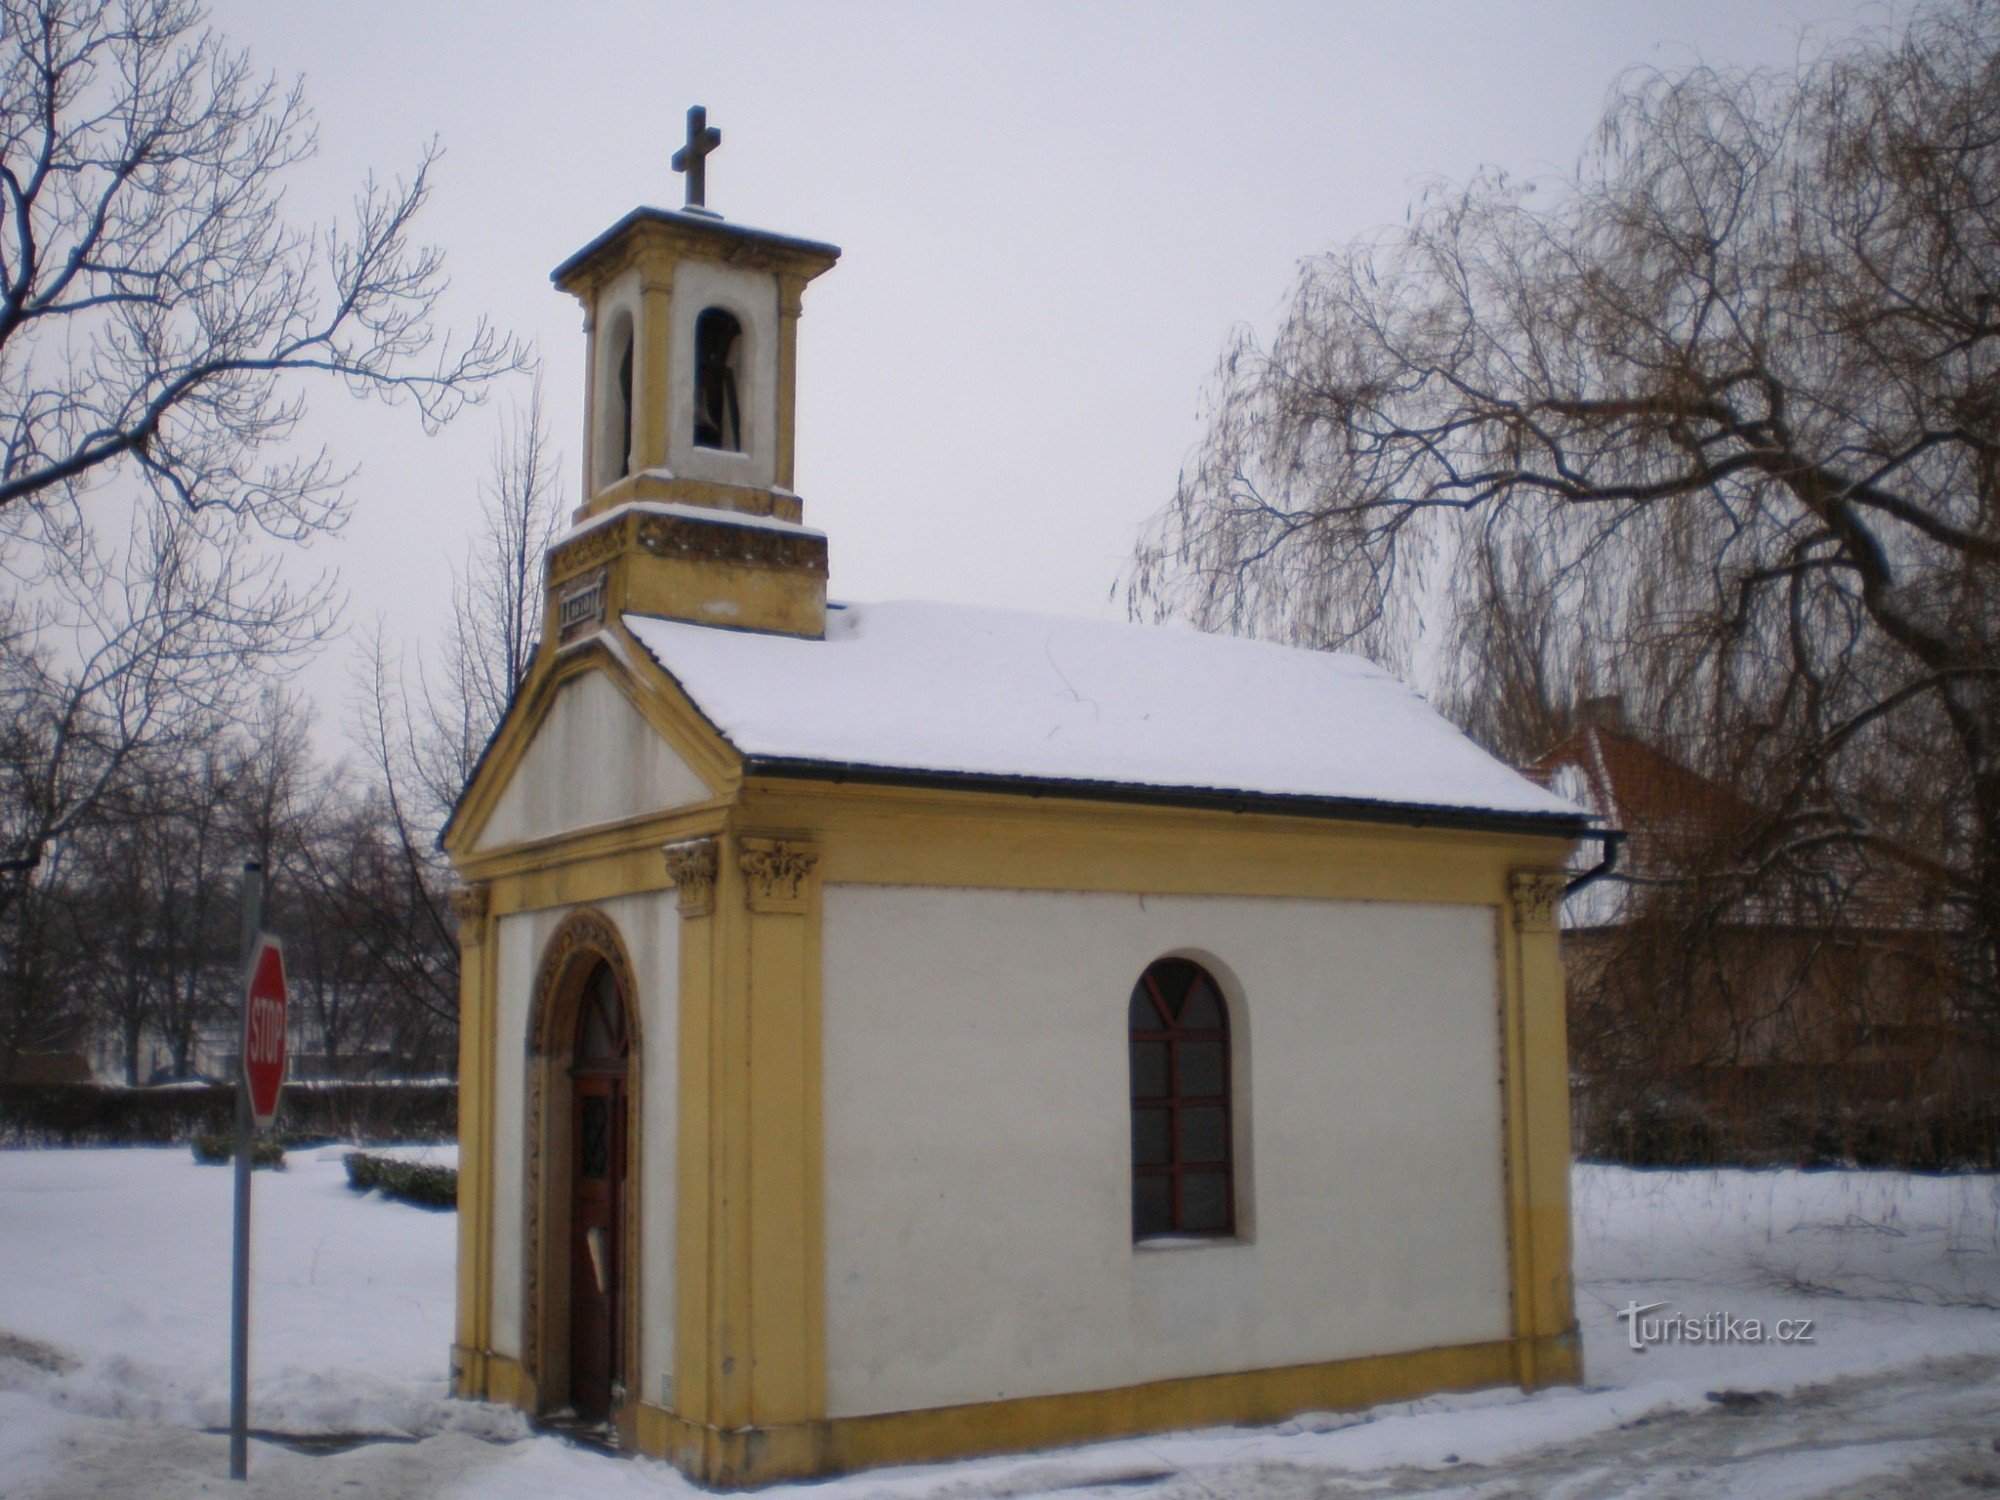 Lower Měcholupy - capela